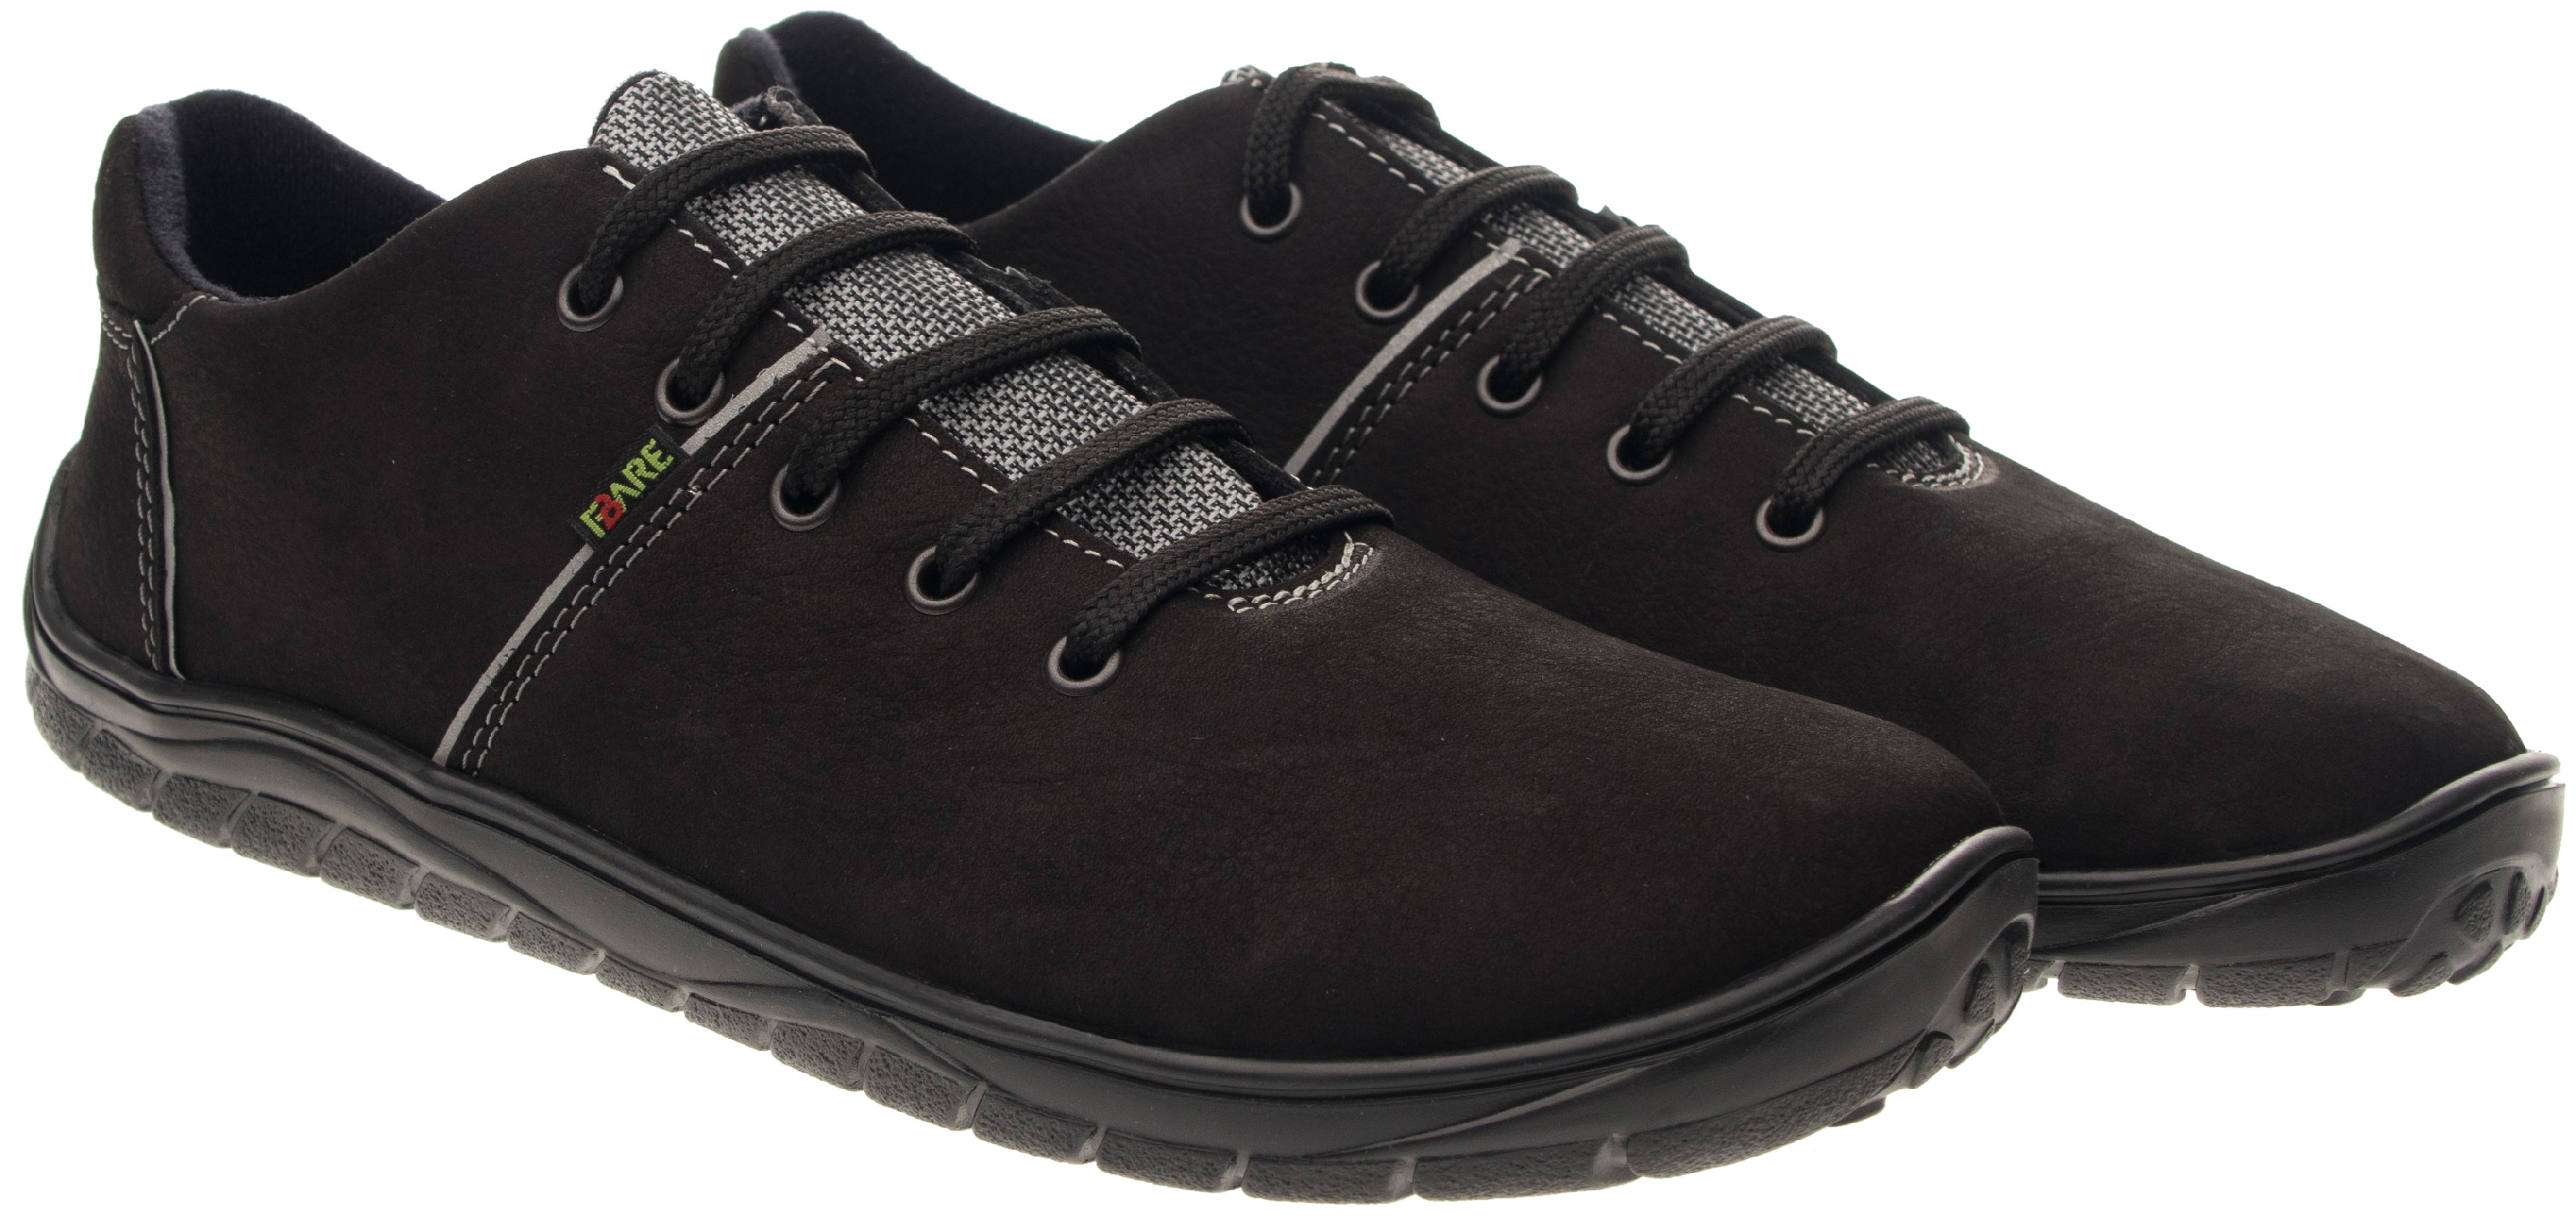 FARE BARE unisex celoroční boty B5716222 černé Velikost obuvi: 41